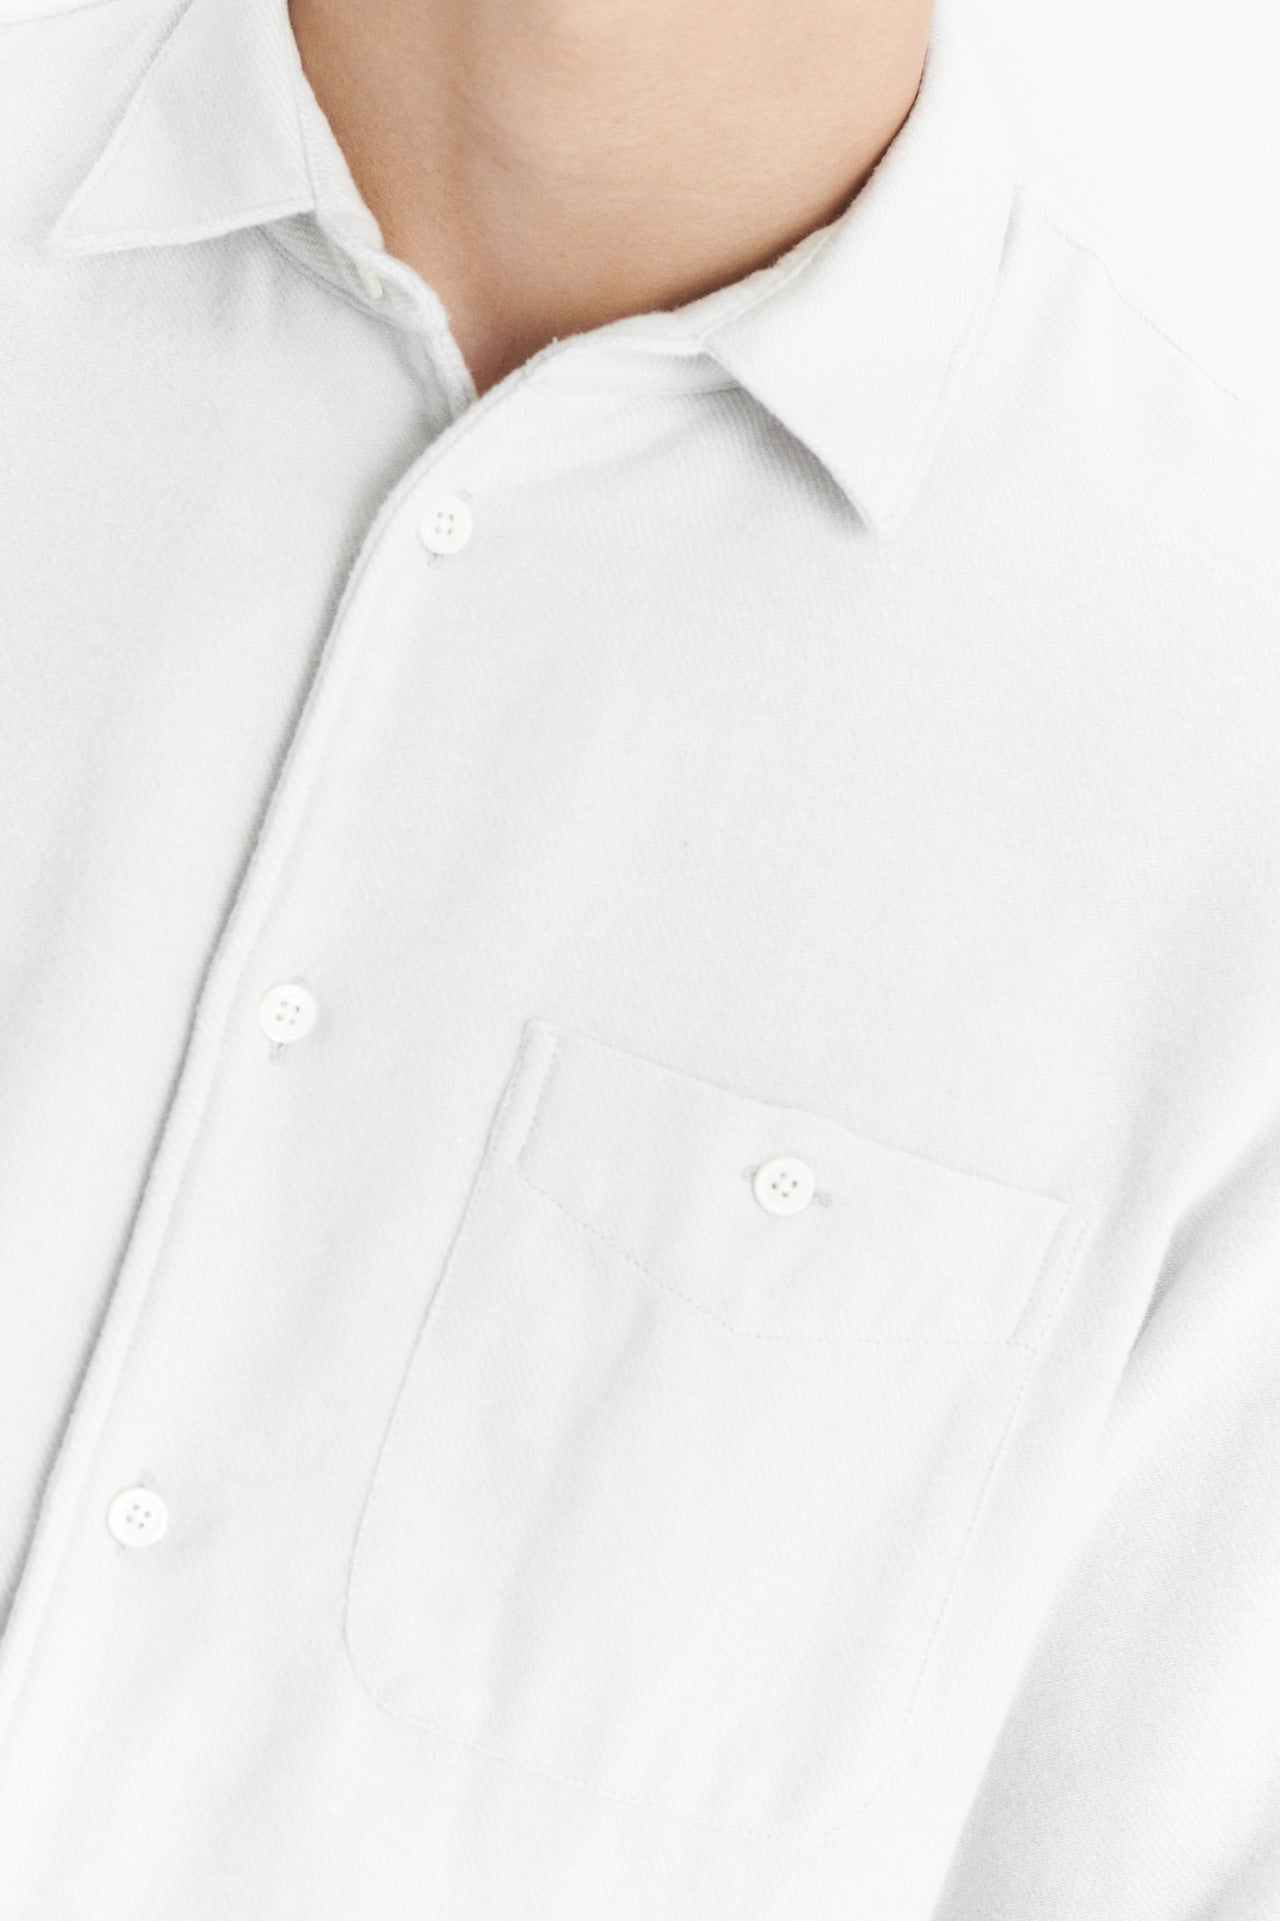 最高級のポルトガル産オーガニックストーングレーコットンフランネルを使用した丈夫なシャツ